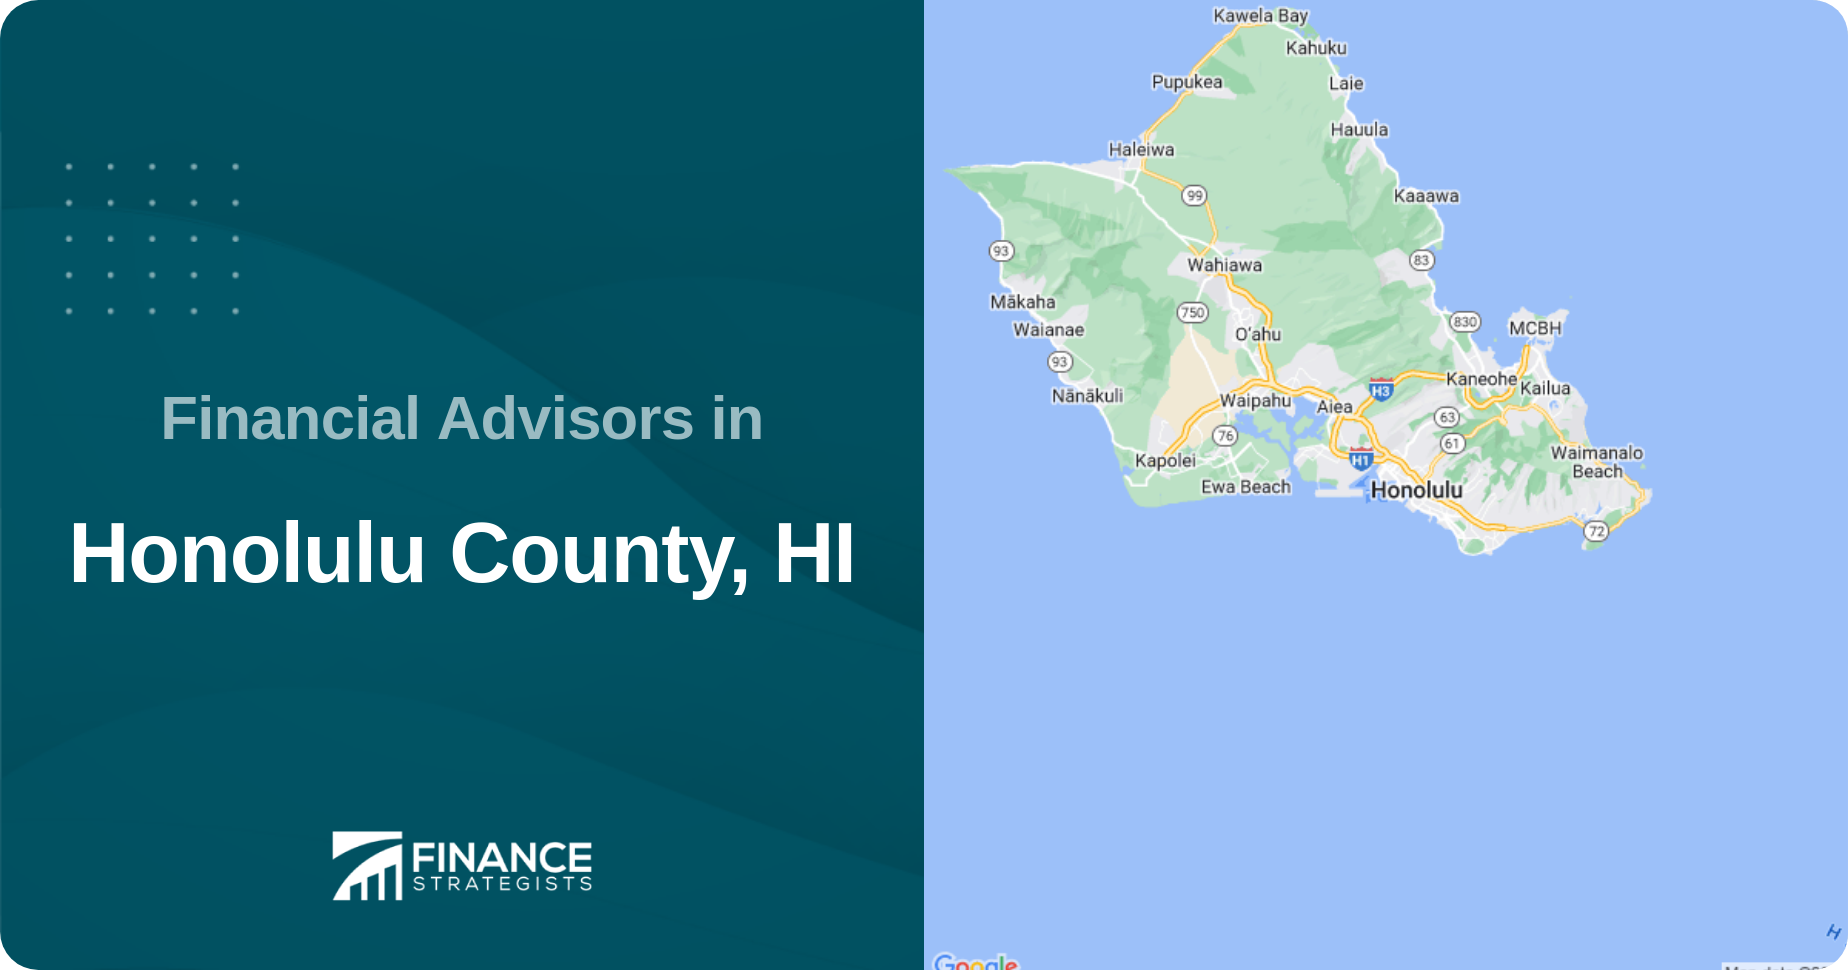 Financial Advisors in Honolulu County, HI